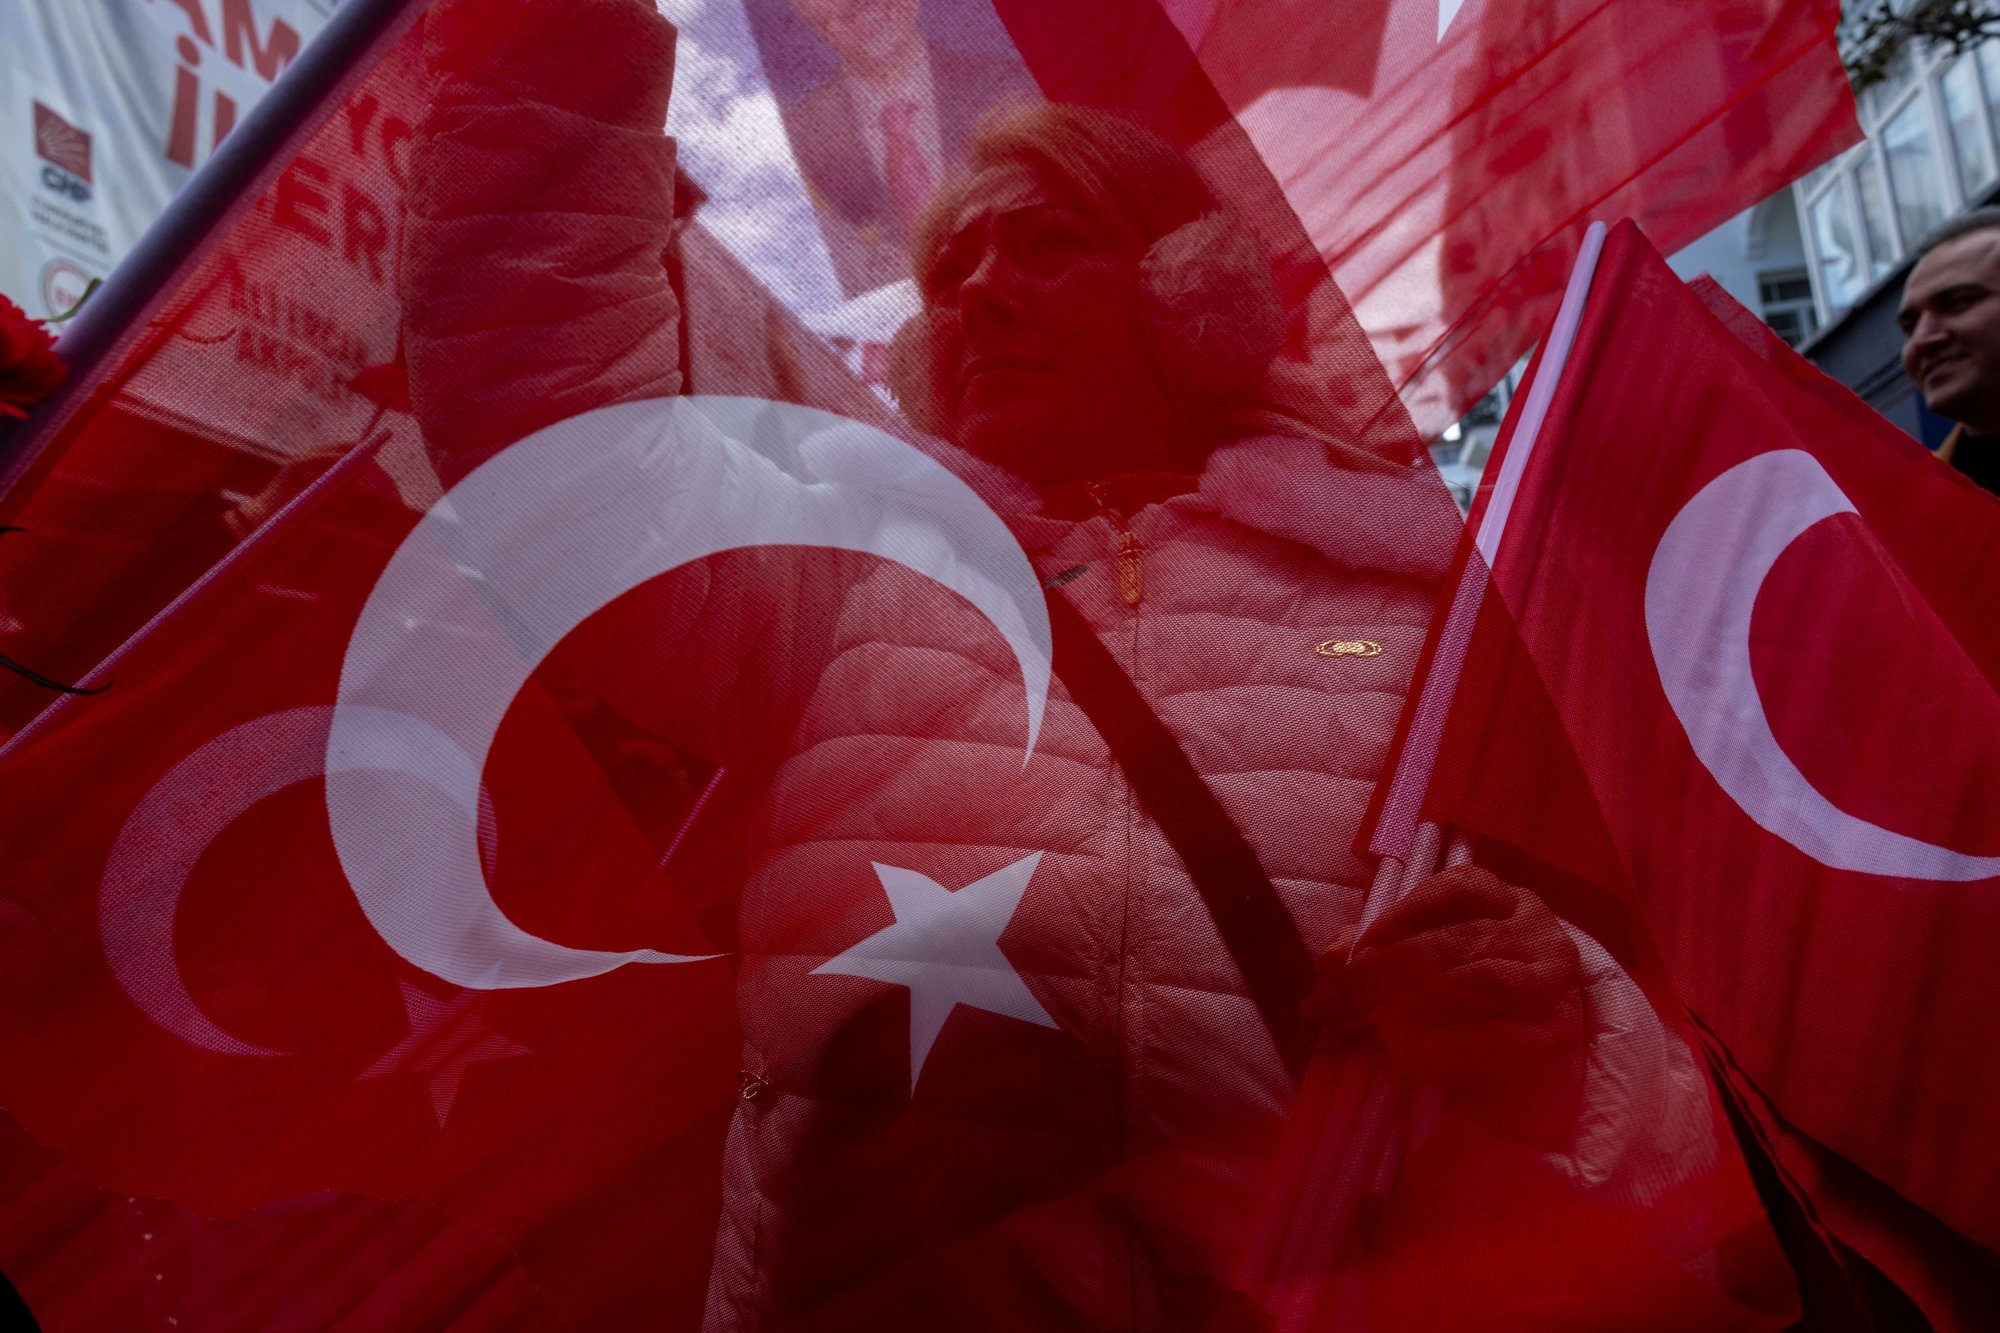 Πληθωρισμός: Το μεγάλο στοίχημα που πρέπει να κερδίσει πάση θυσία η Τουρκία [γραφήματα]